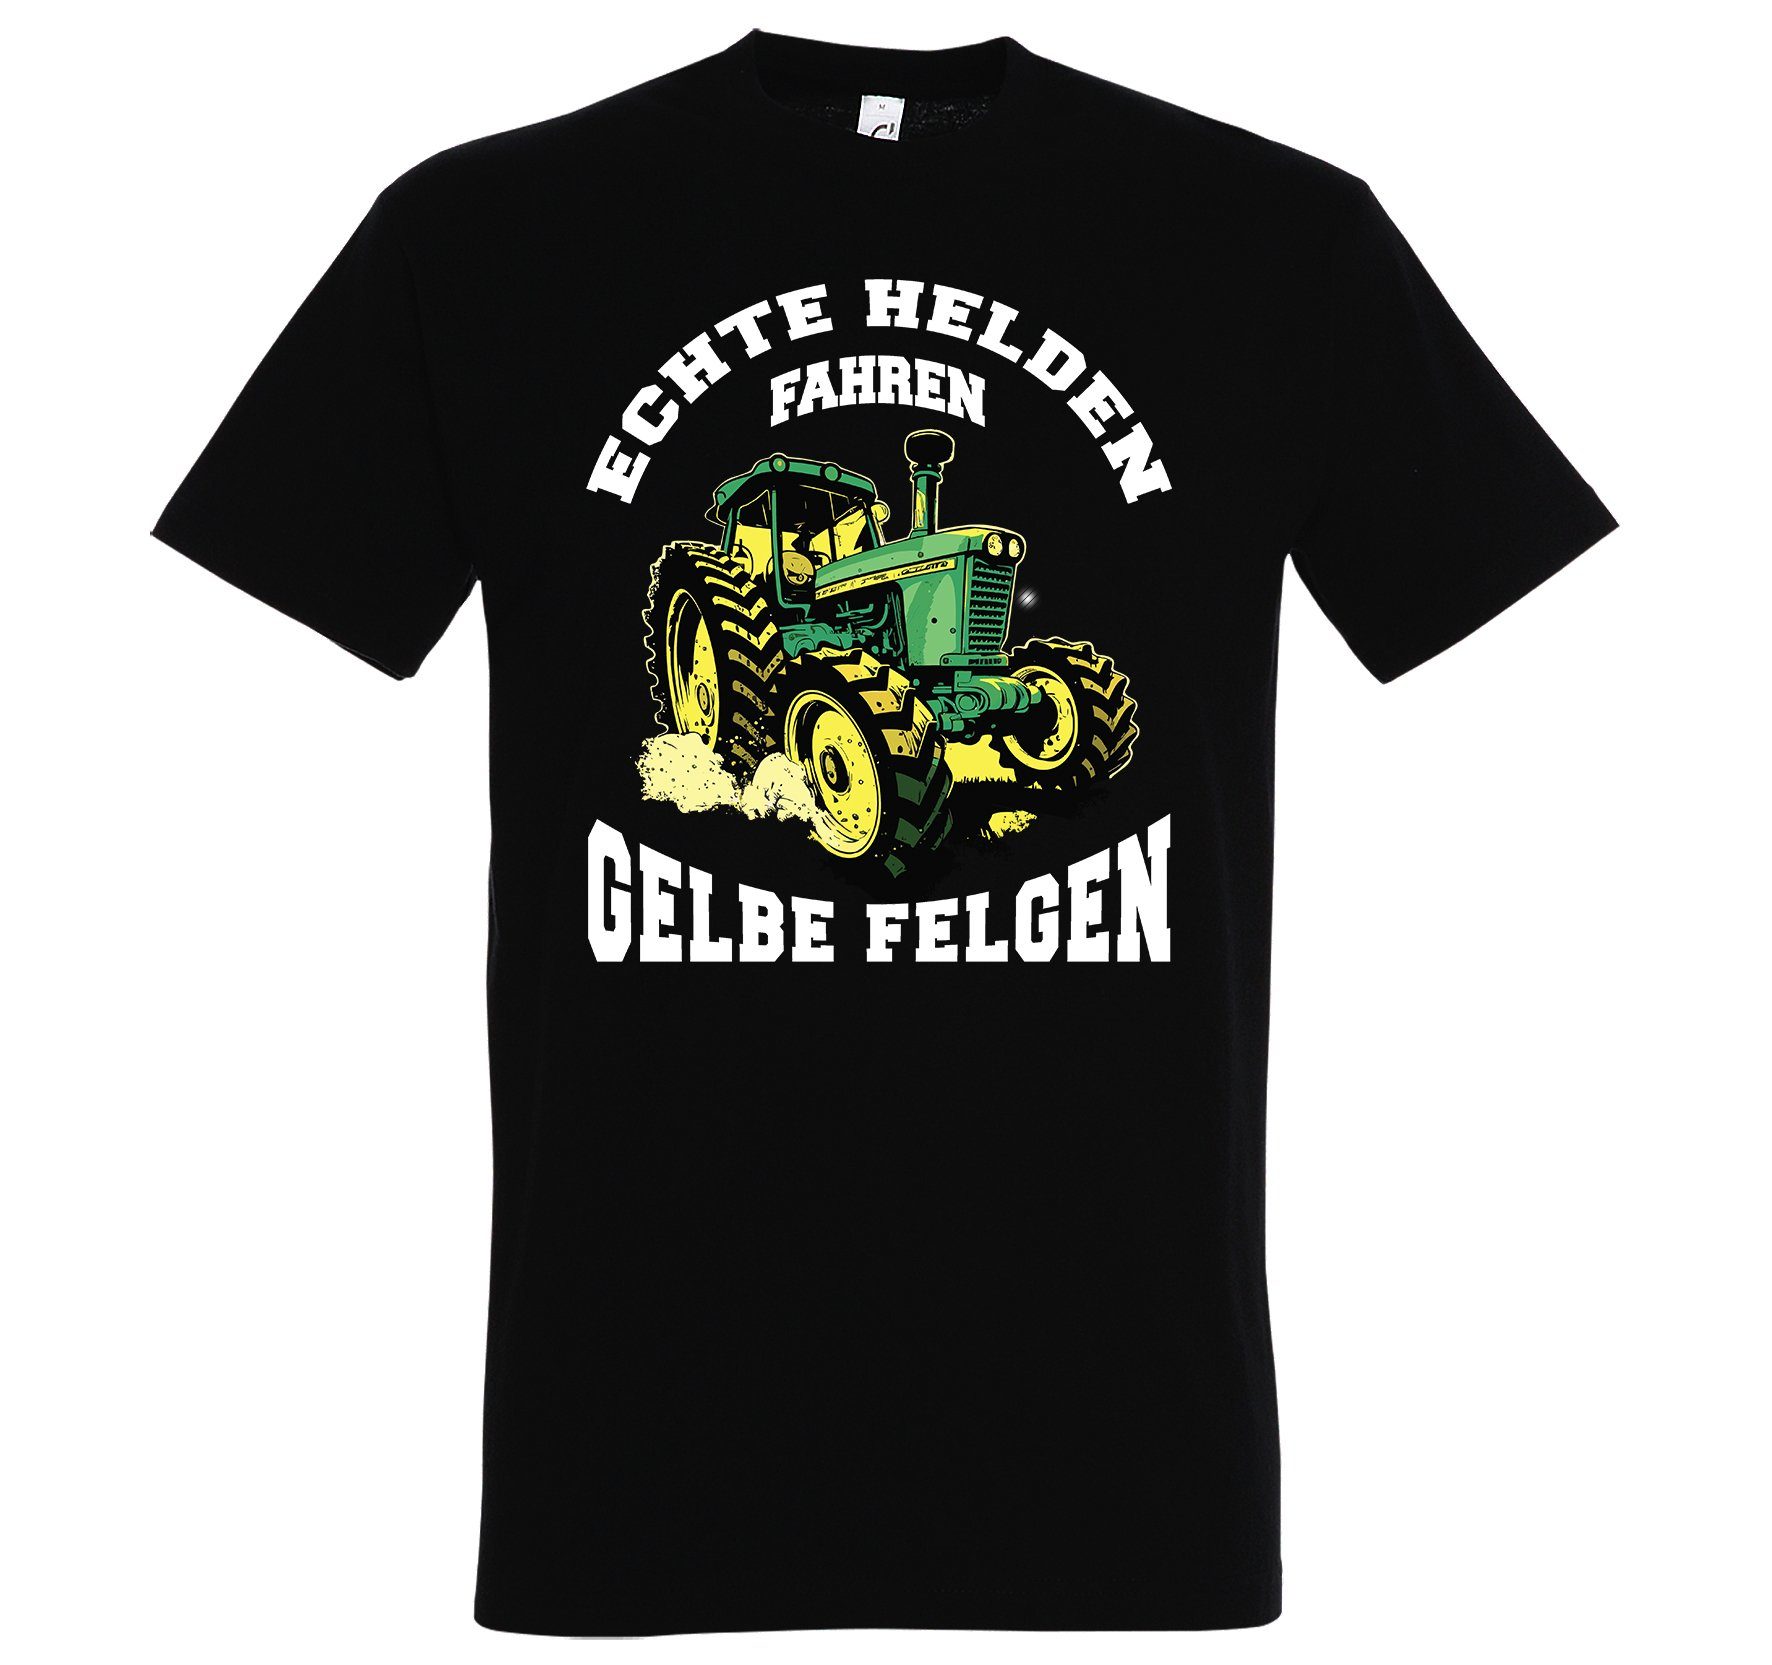 Designz T-Shirt fahren Felgen" Helden lustigem mit Schwarz Spruch Print-Shirt gelbe Youth "Echte Herren